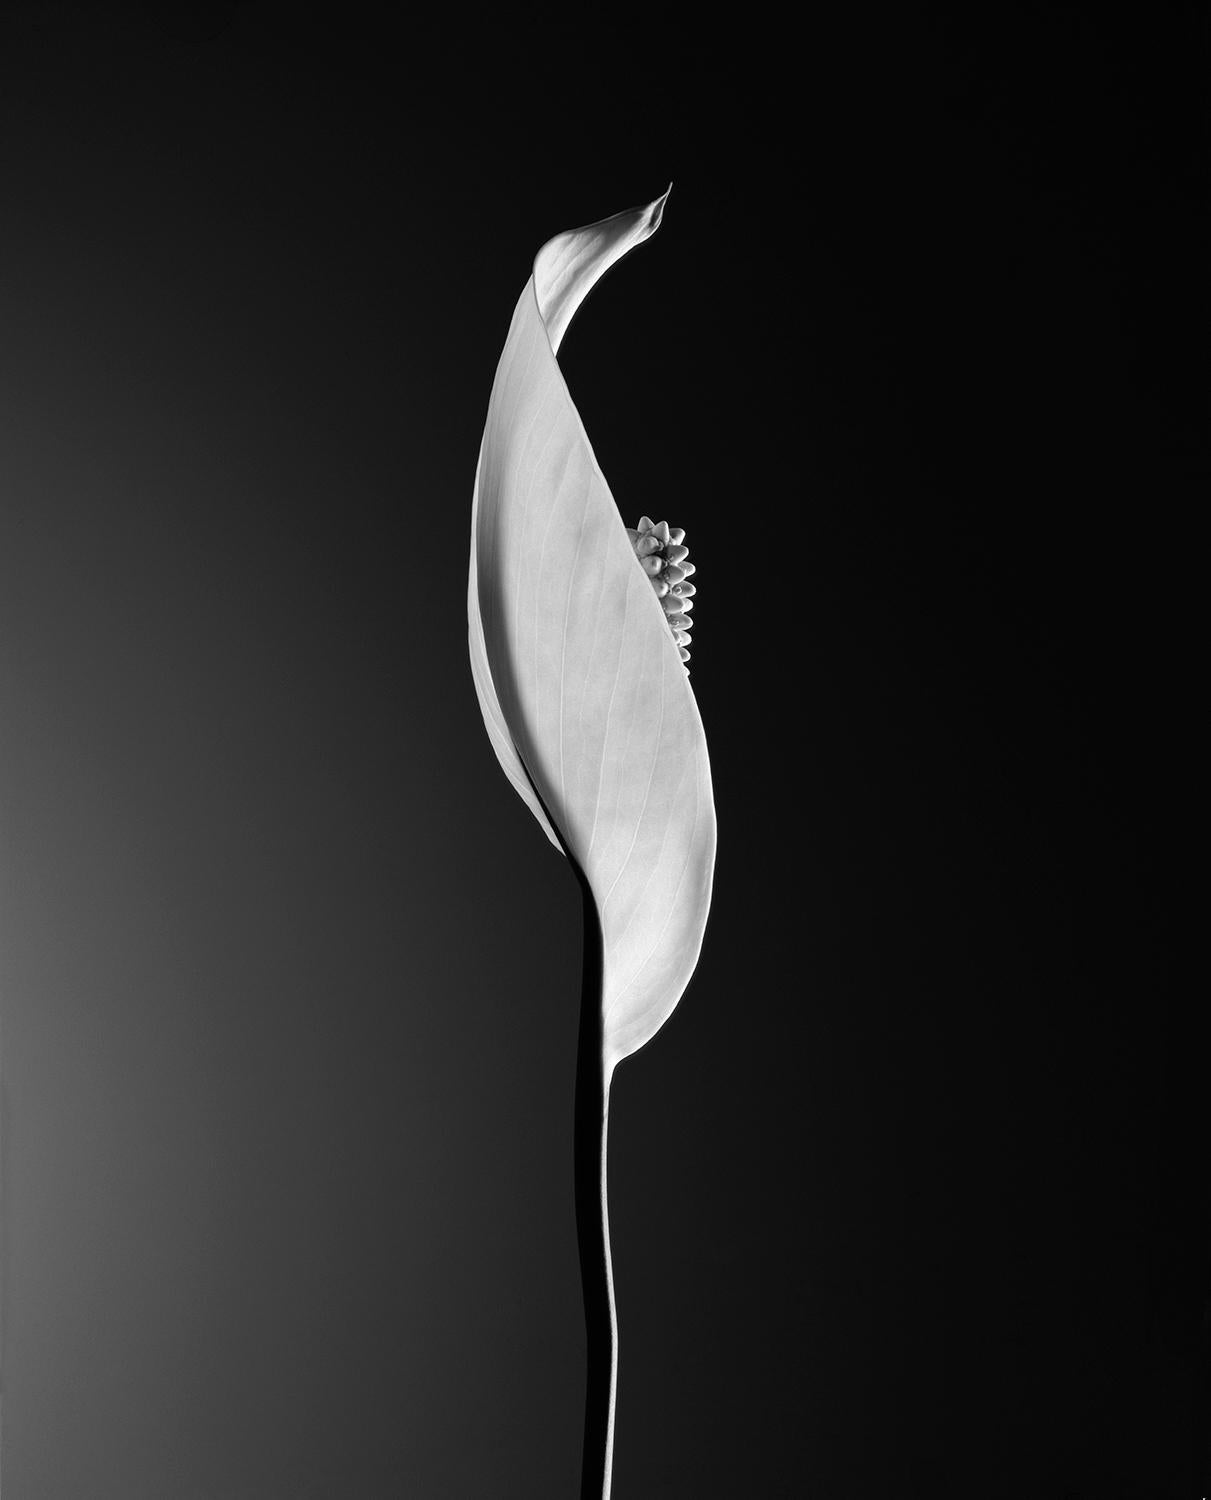 Auflage von 25 Stück
vom Künstler signiert und nummeriert

Dieses Bild der Blume "Calla" wurde auf einem Polaroidfilm aufgenommen.

JJK ist ein Pseudonym für einen der erfolgreichsten Fotokünstler der Welt.
In seiner Serie "Always in my mind" stellt